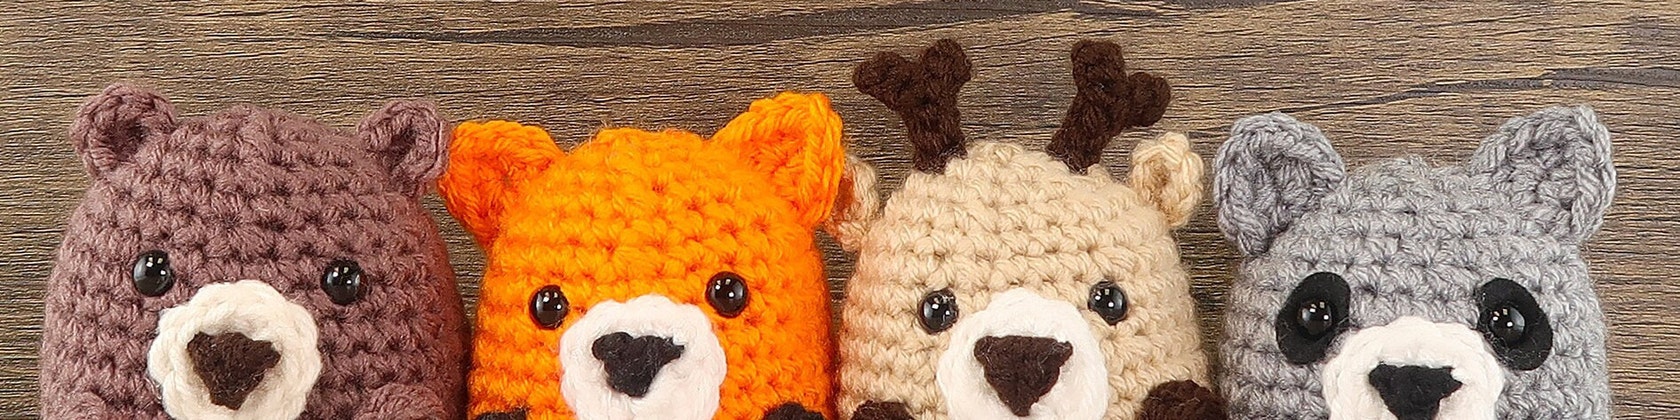 Beginner Chicken Crochet Kit Easy Crochet Starter Kit Crochet Animals Kit  Amigurumi Kit Crochet Gift Animal Crochet Store 